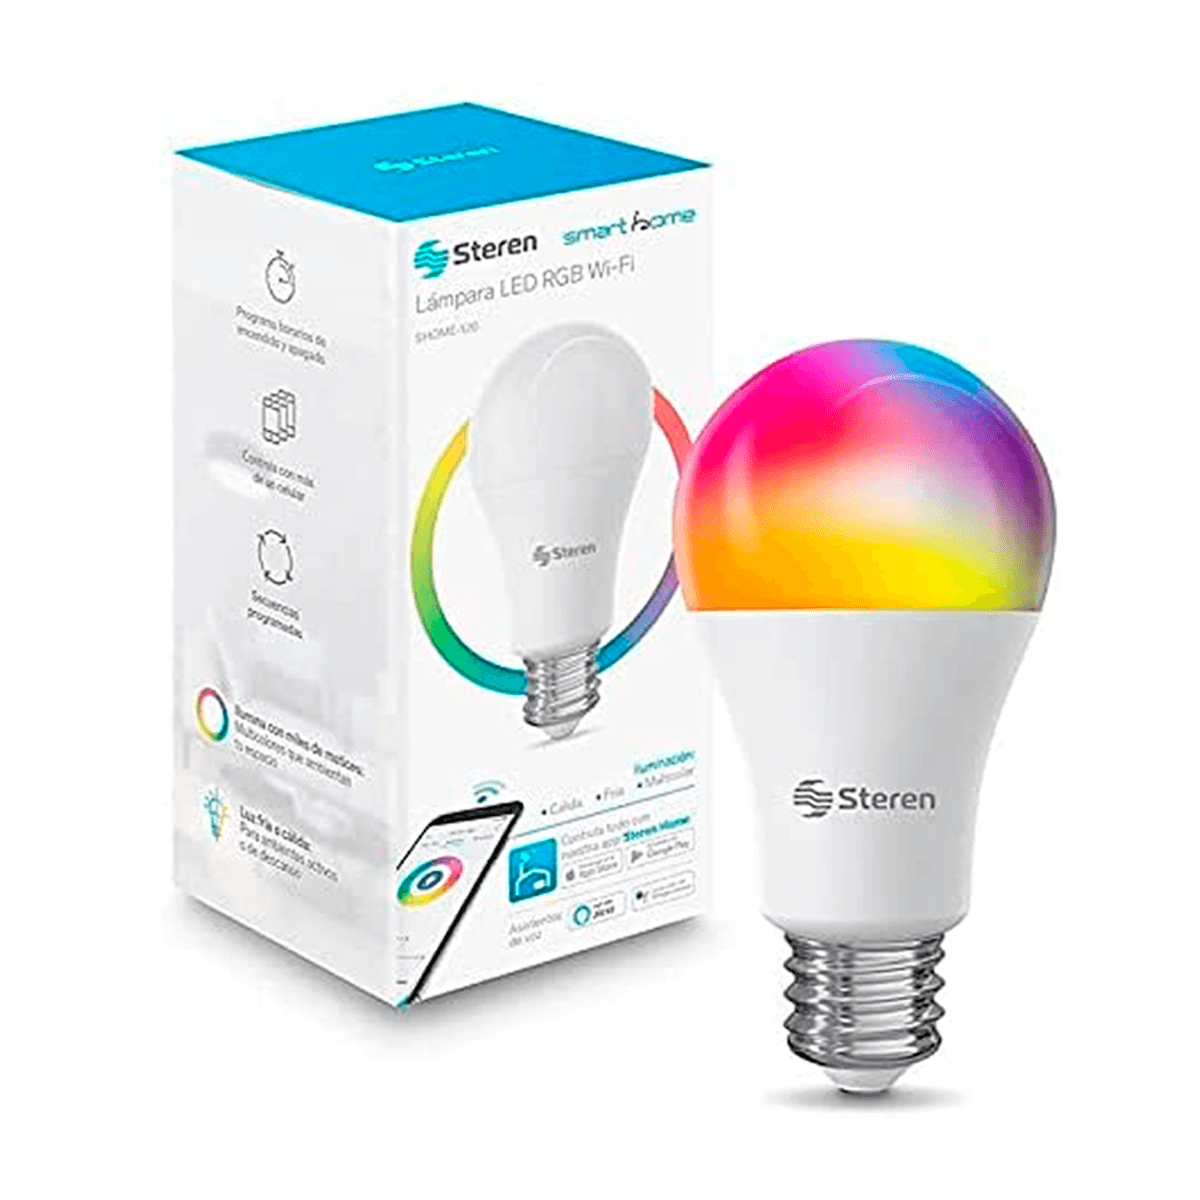 Foco LED Wi-Fi multicolor, de 10W, Luz RGB Compatible Con Alexa y Google Assistant, Temporizador Foco Inteligente Bombilla Multicolor